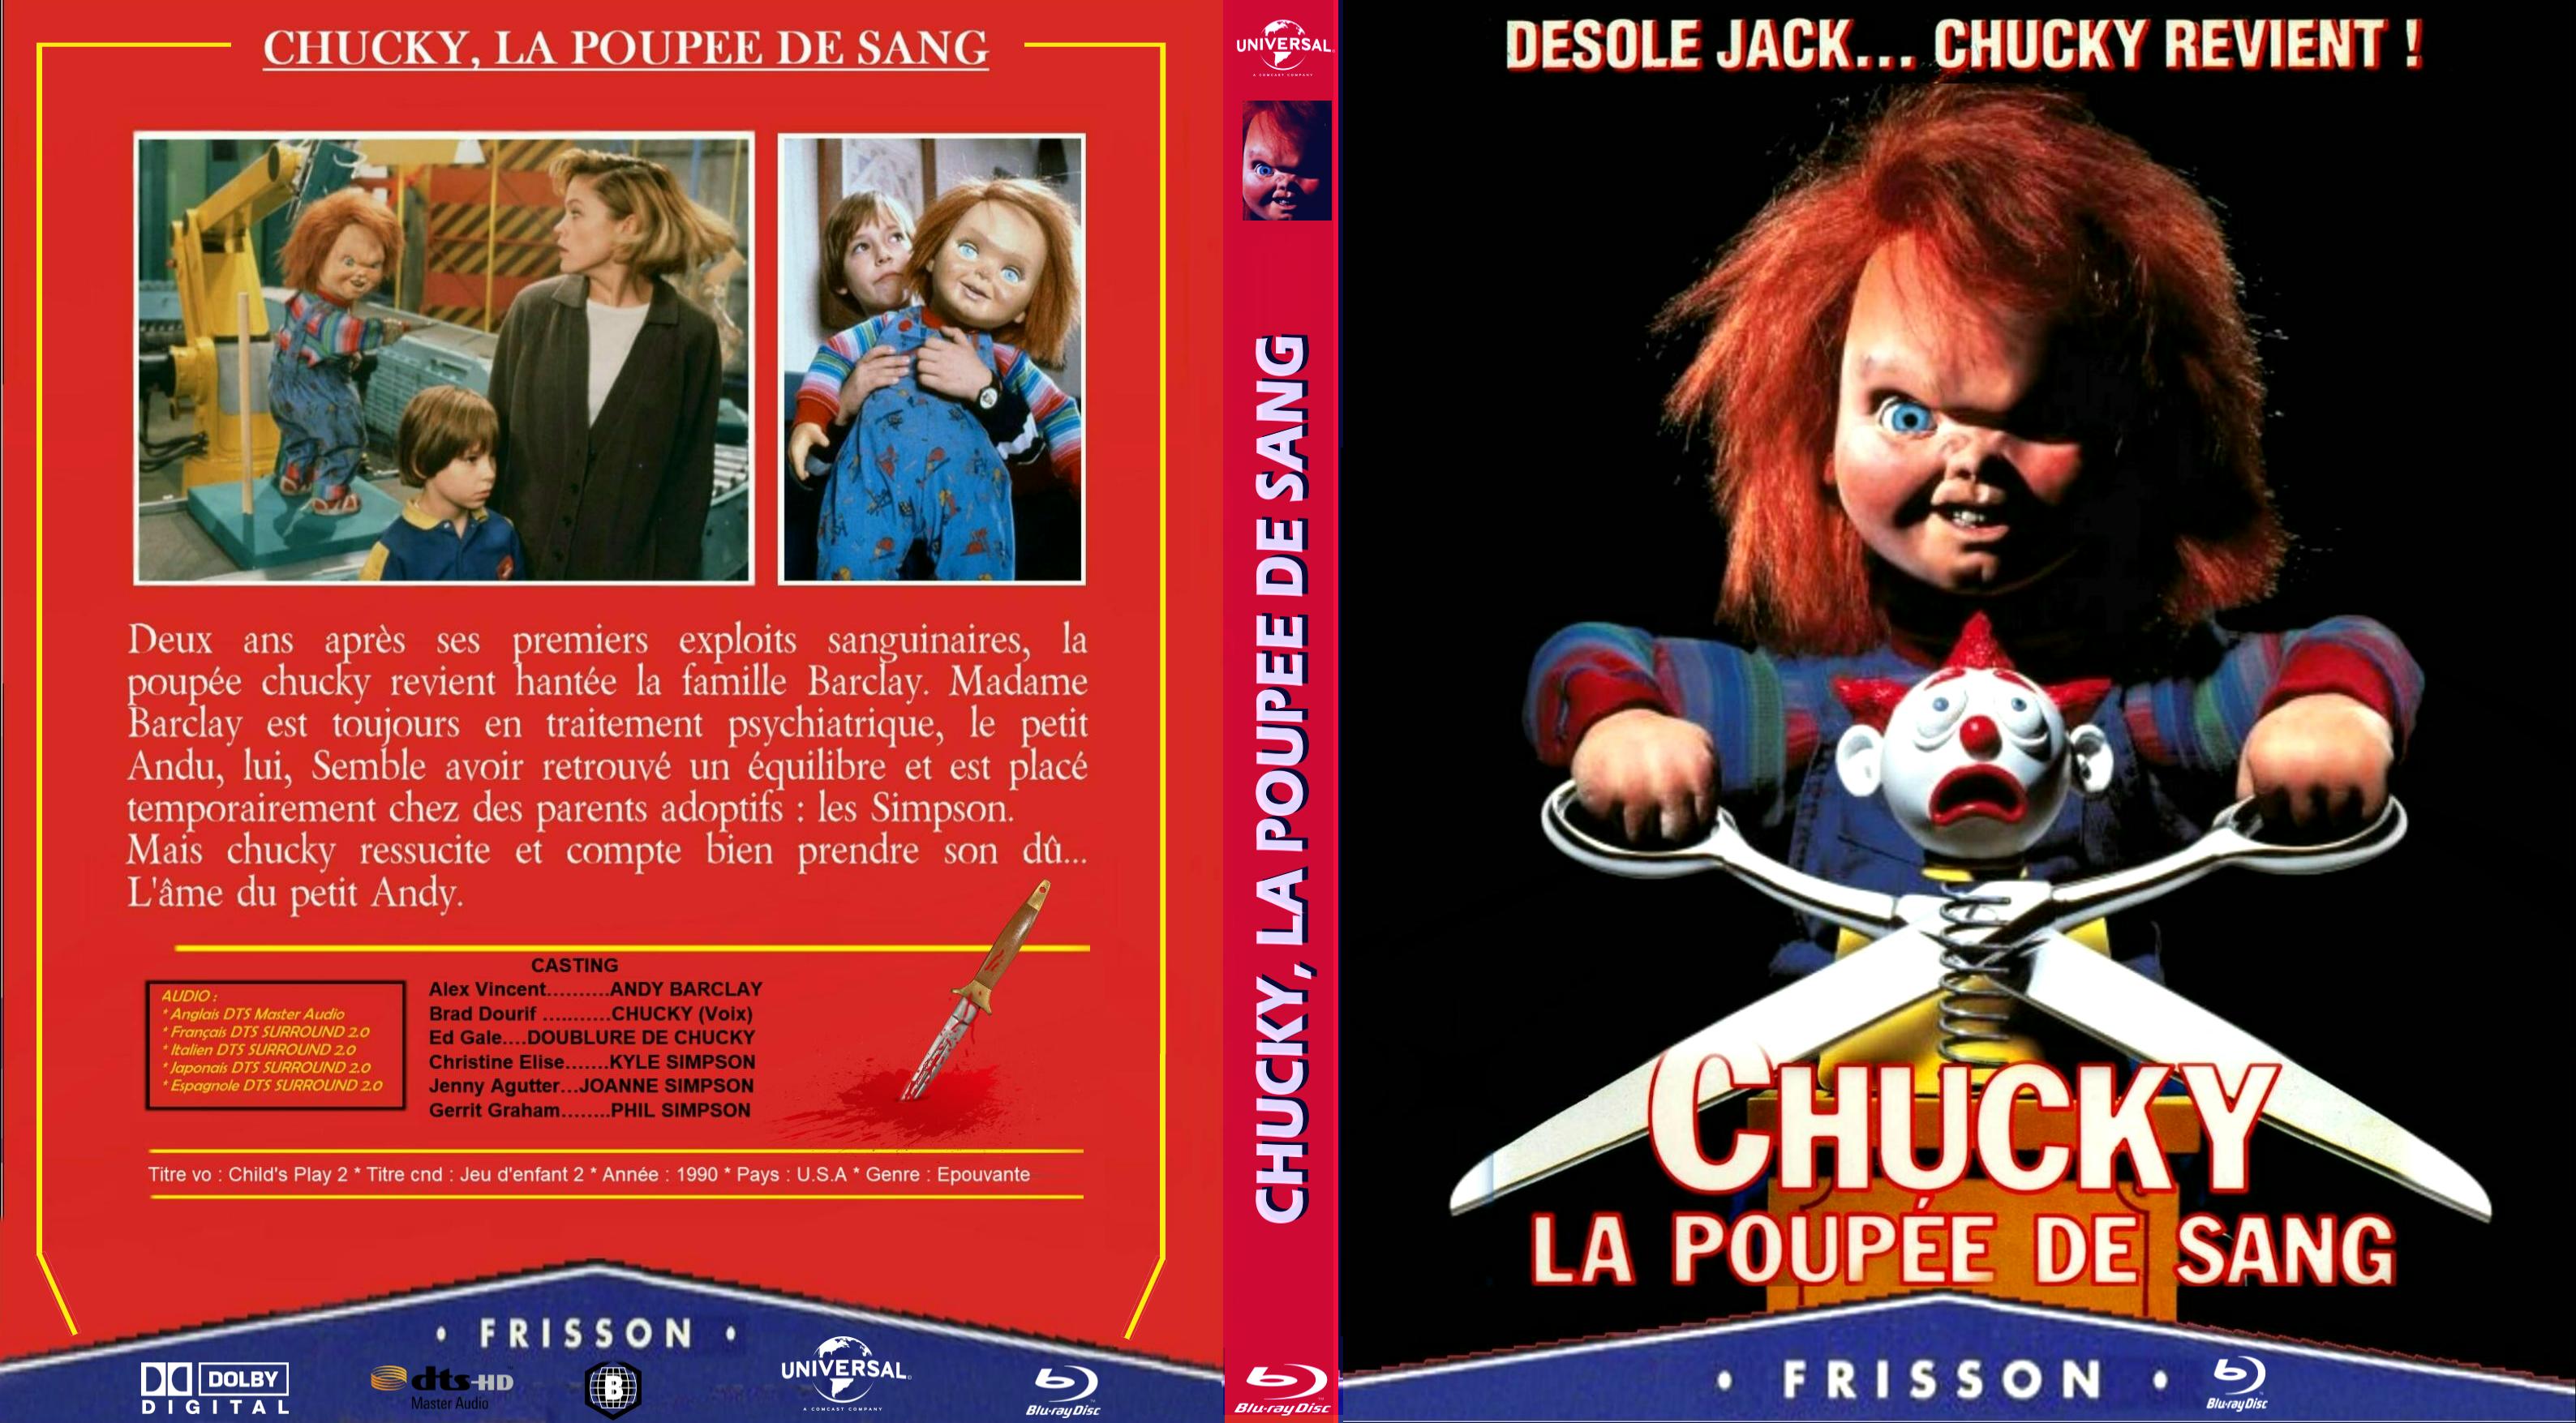 Jaquette DVD Chucky 2 custom (BLU-RAY) v2